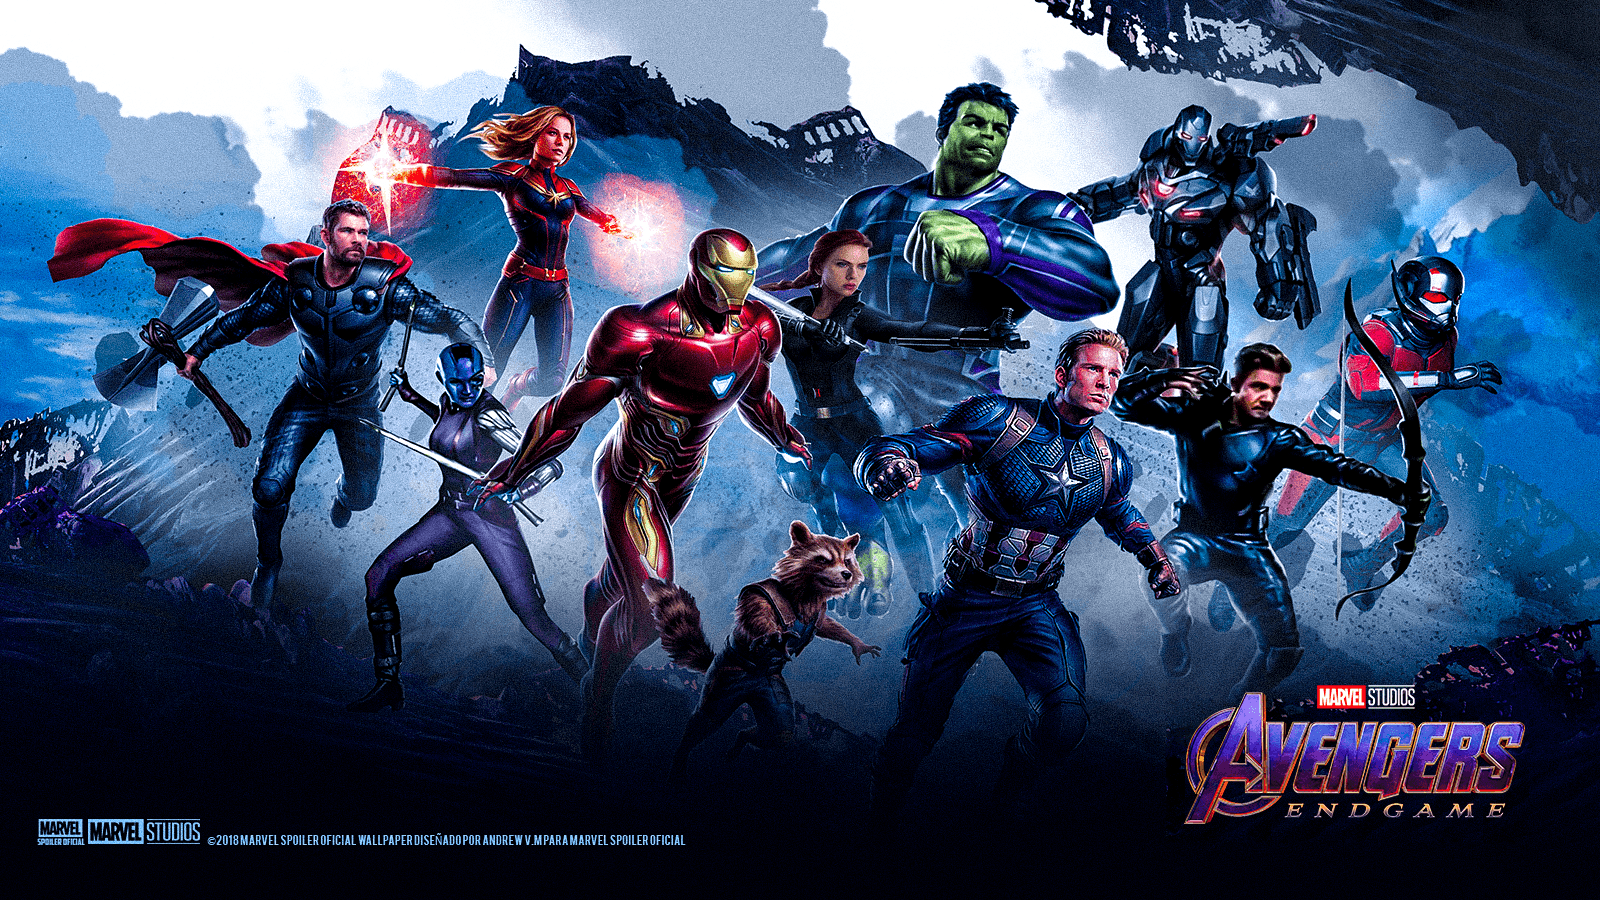 Avengers Endgame Wallpapers - Wallpaper Cave